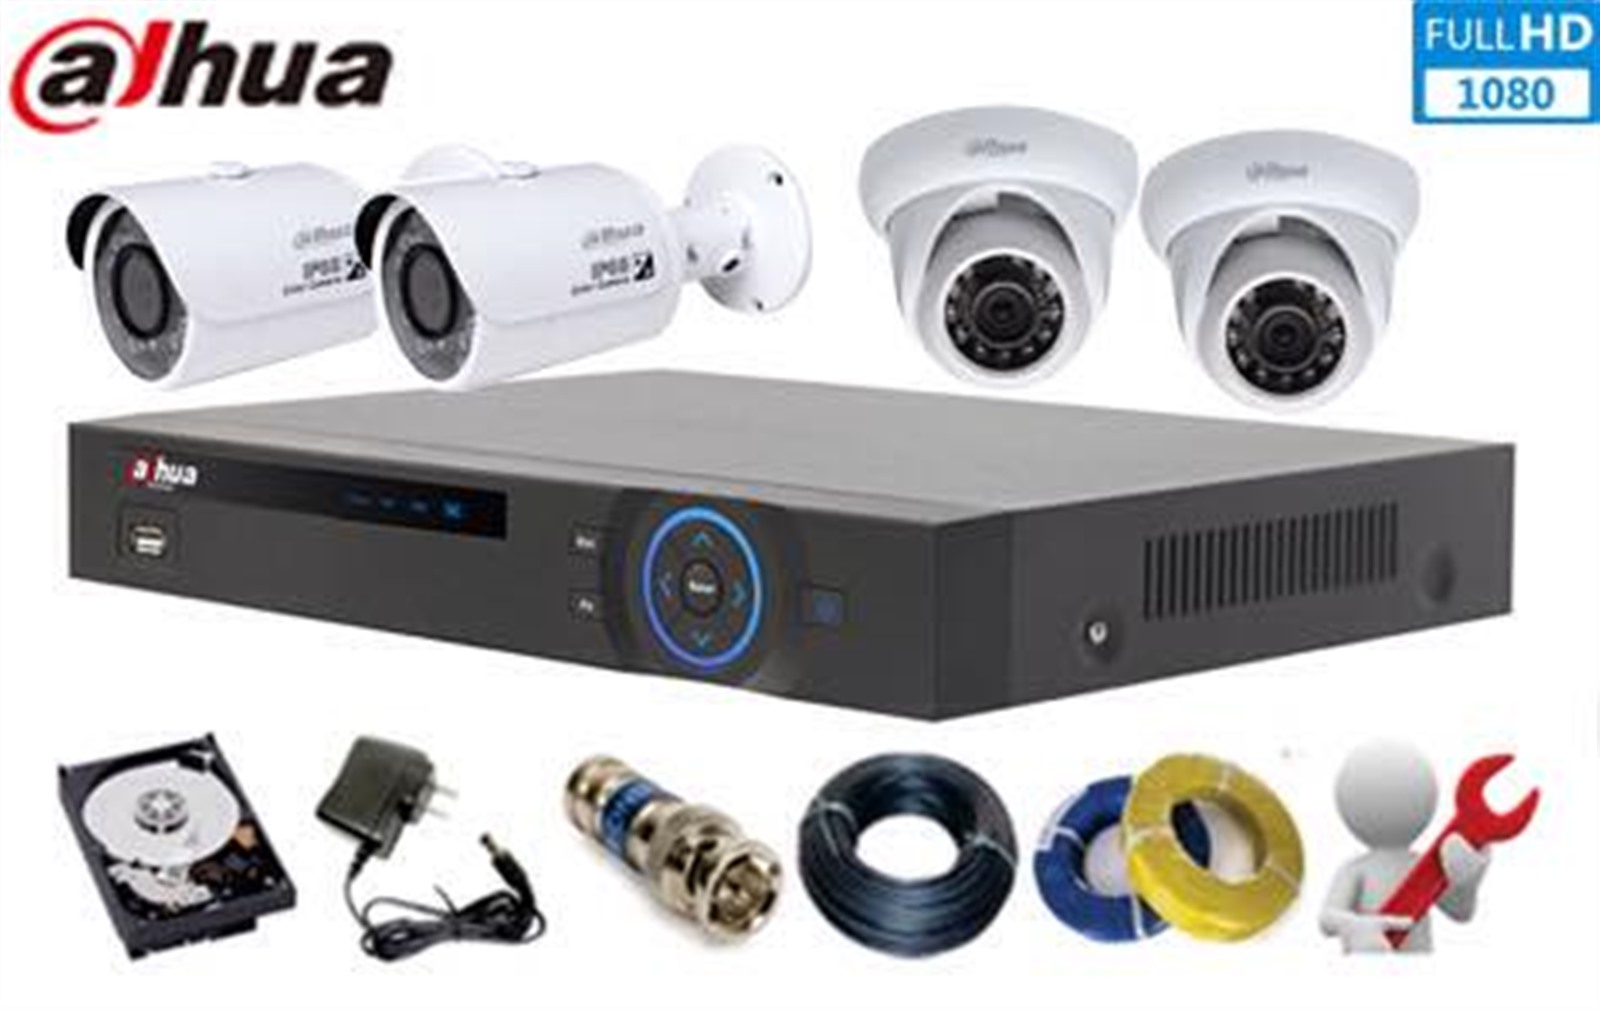 Lắp đặt trọn bộ 7 camera IP giám sát 2.0MP Dahua